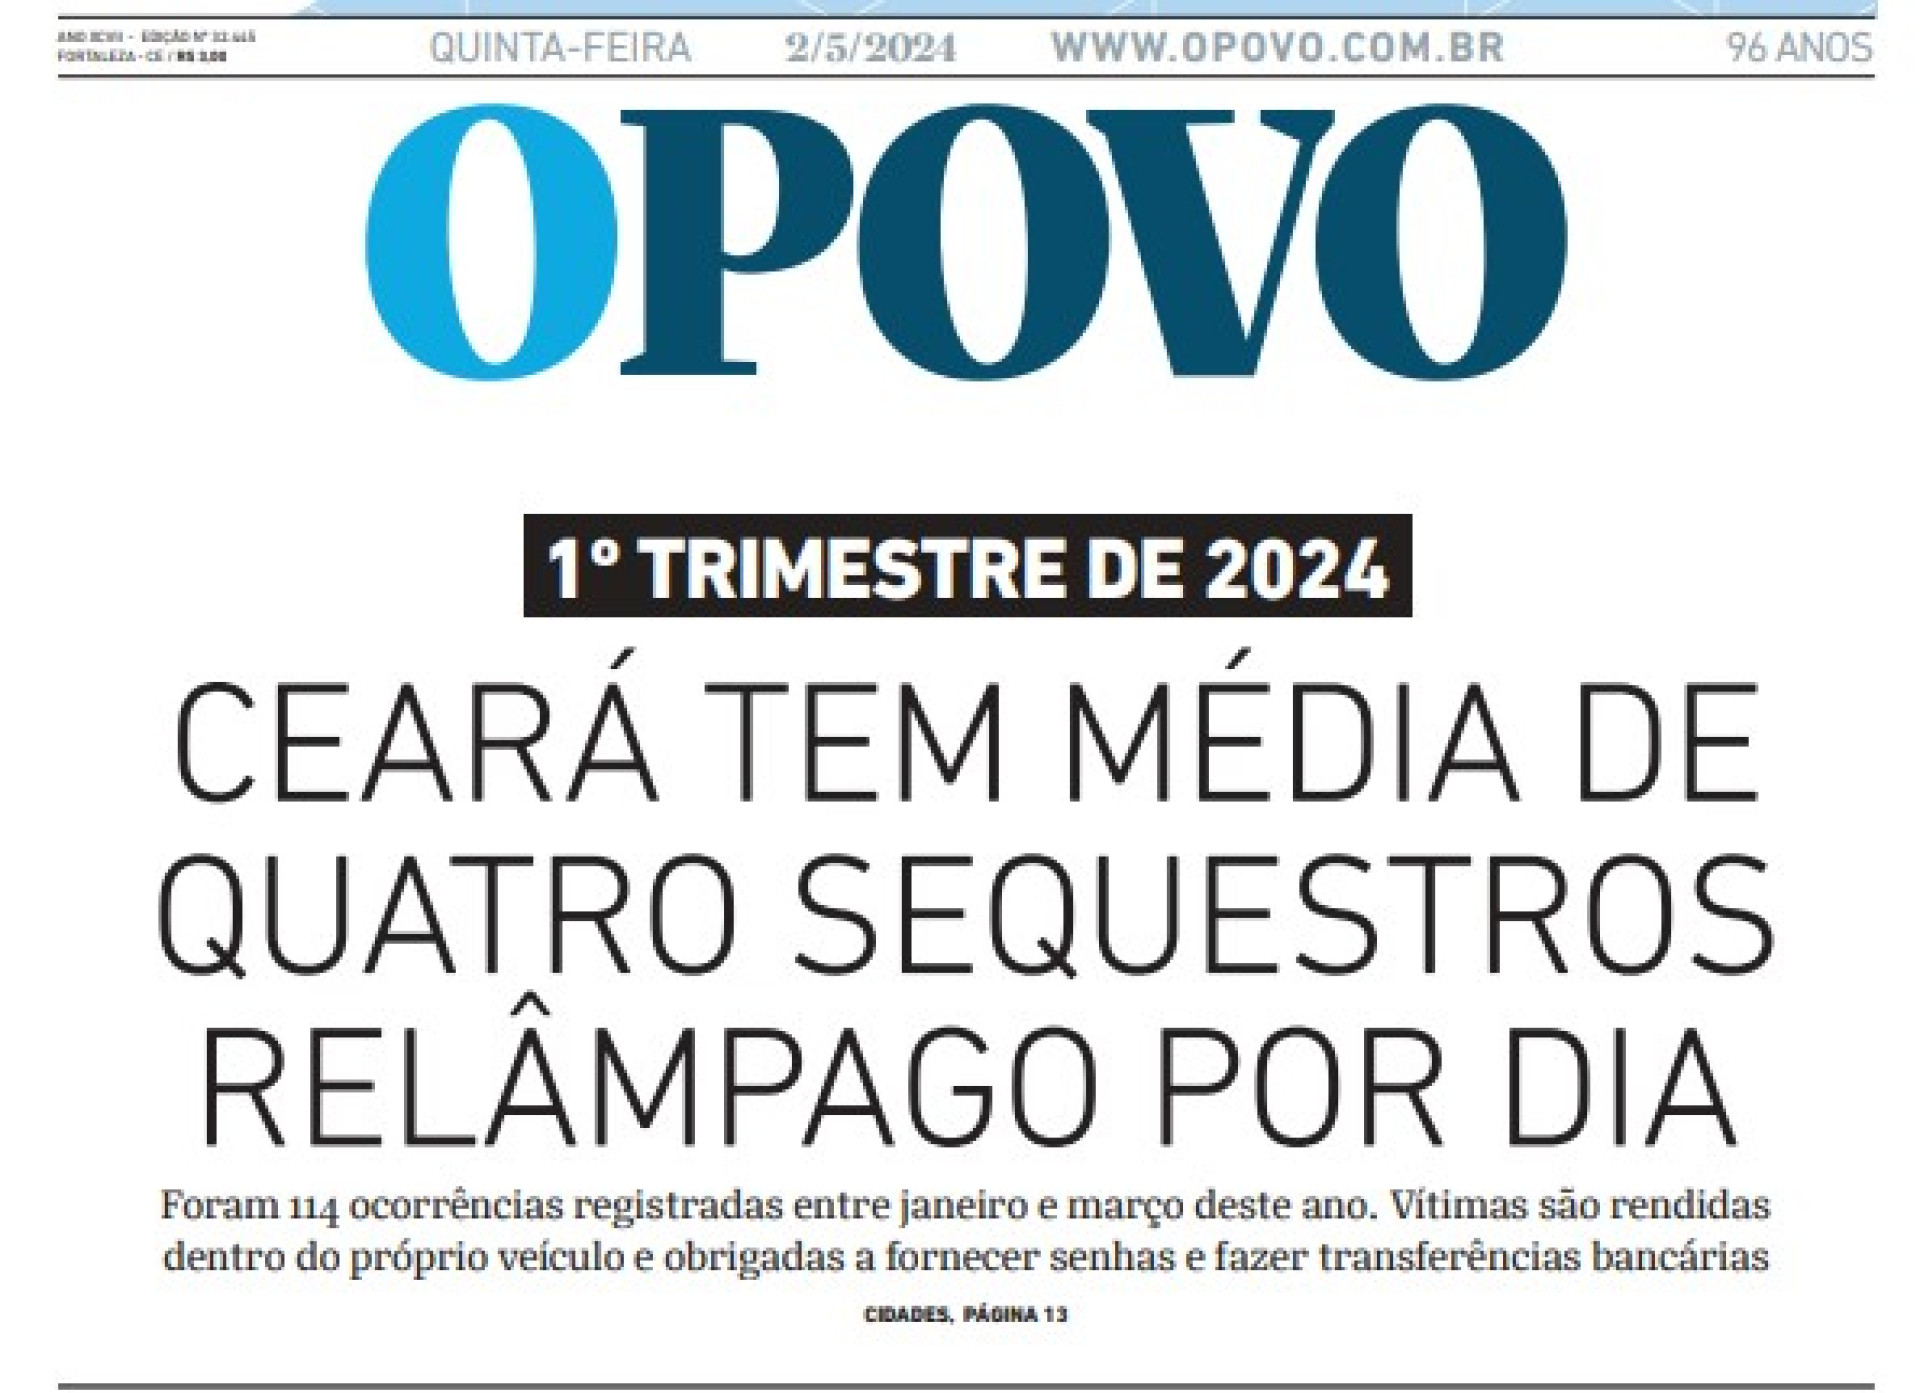 Imagem da capa do O POVO do dia 2 de maio de 2024  (Foto: Reprodução)